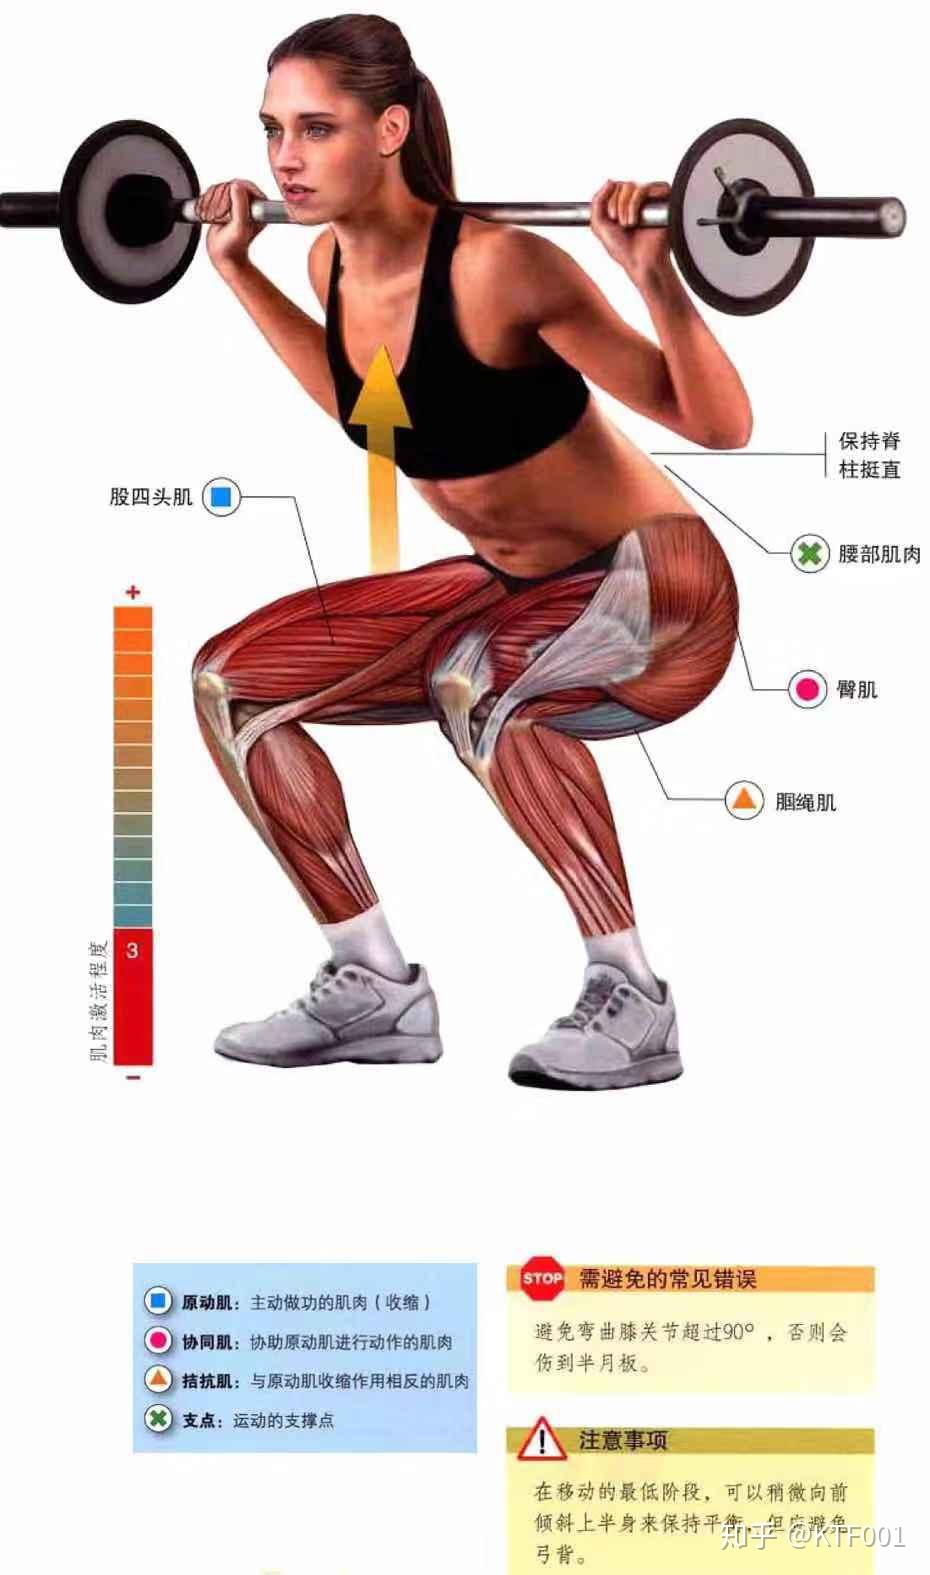 大腿器械训练详细教程股四头肌:这块肌肉包括4个部分